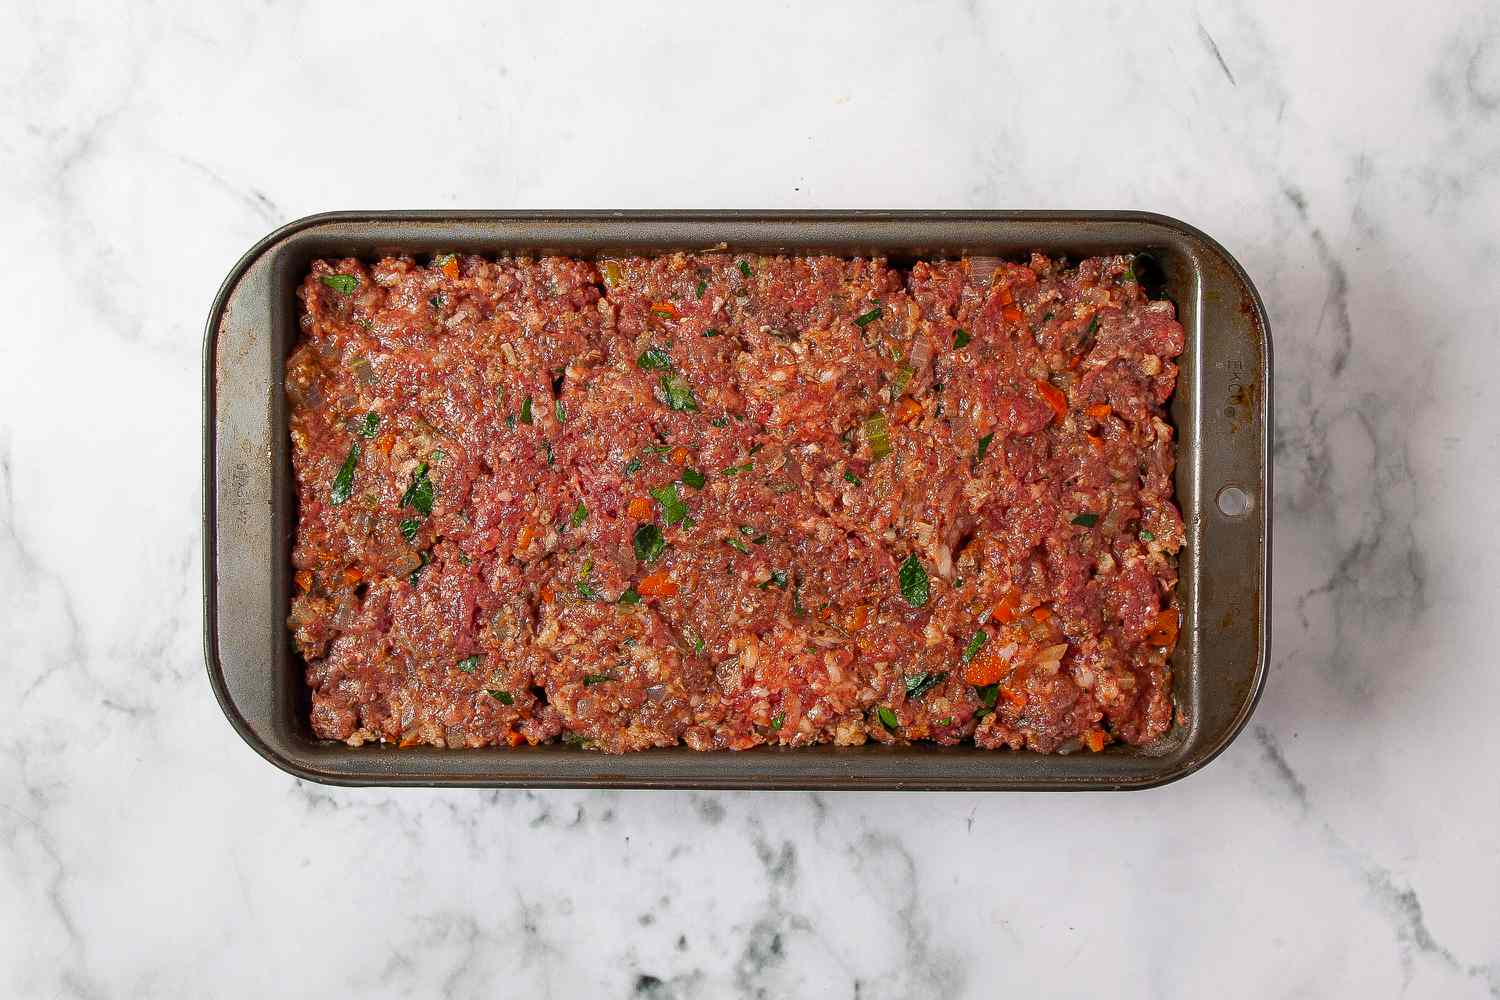 Meatloaf mixture evenly filling a loaf pan